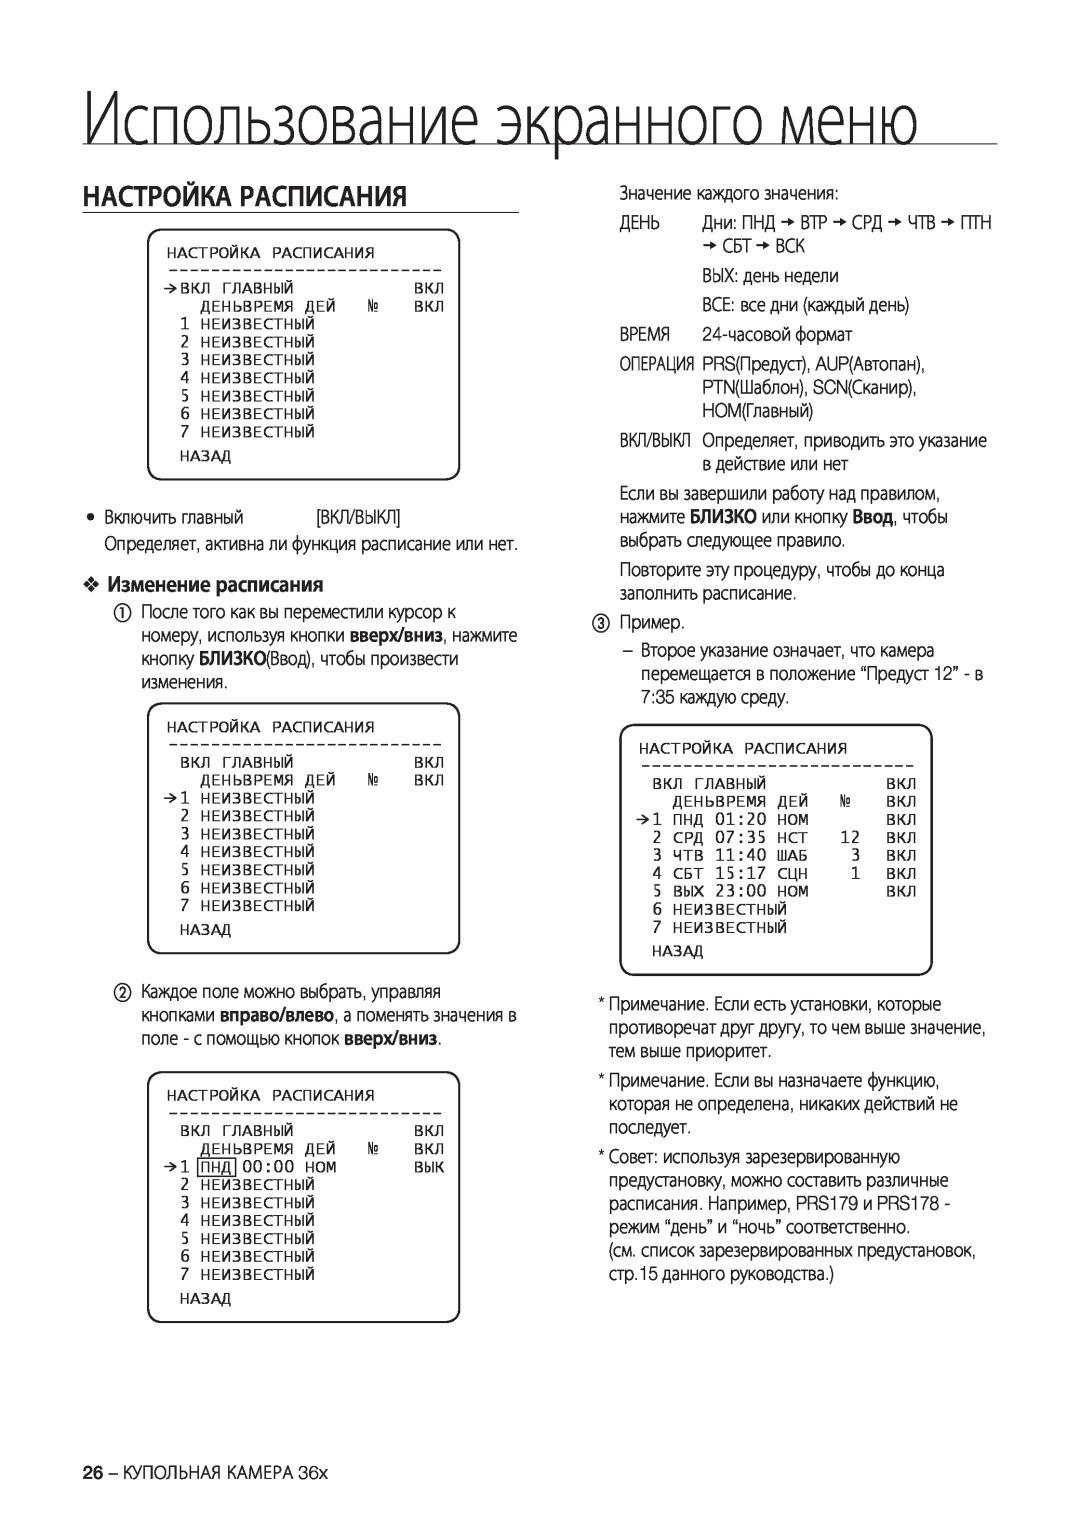 Samsung SCC-C7478P manual Настройка Расписания, Изменение расписания, Использование экранного меню 